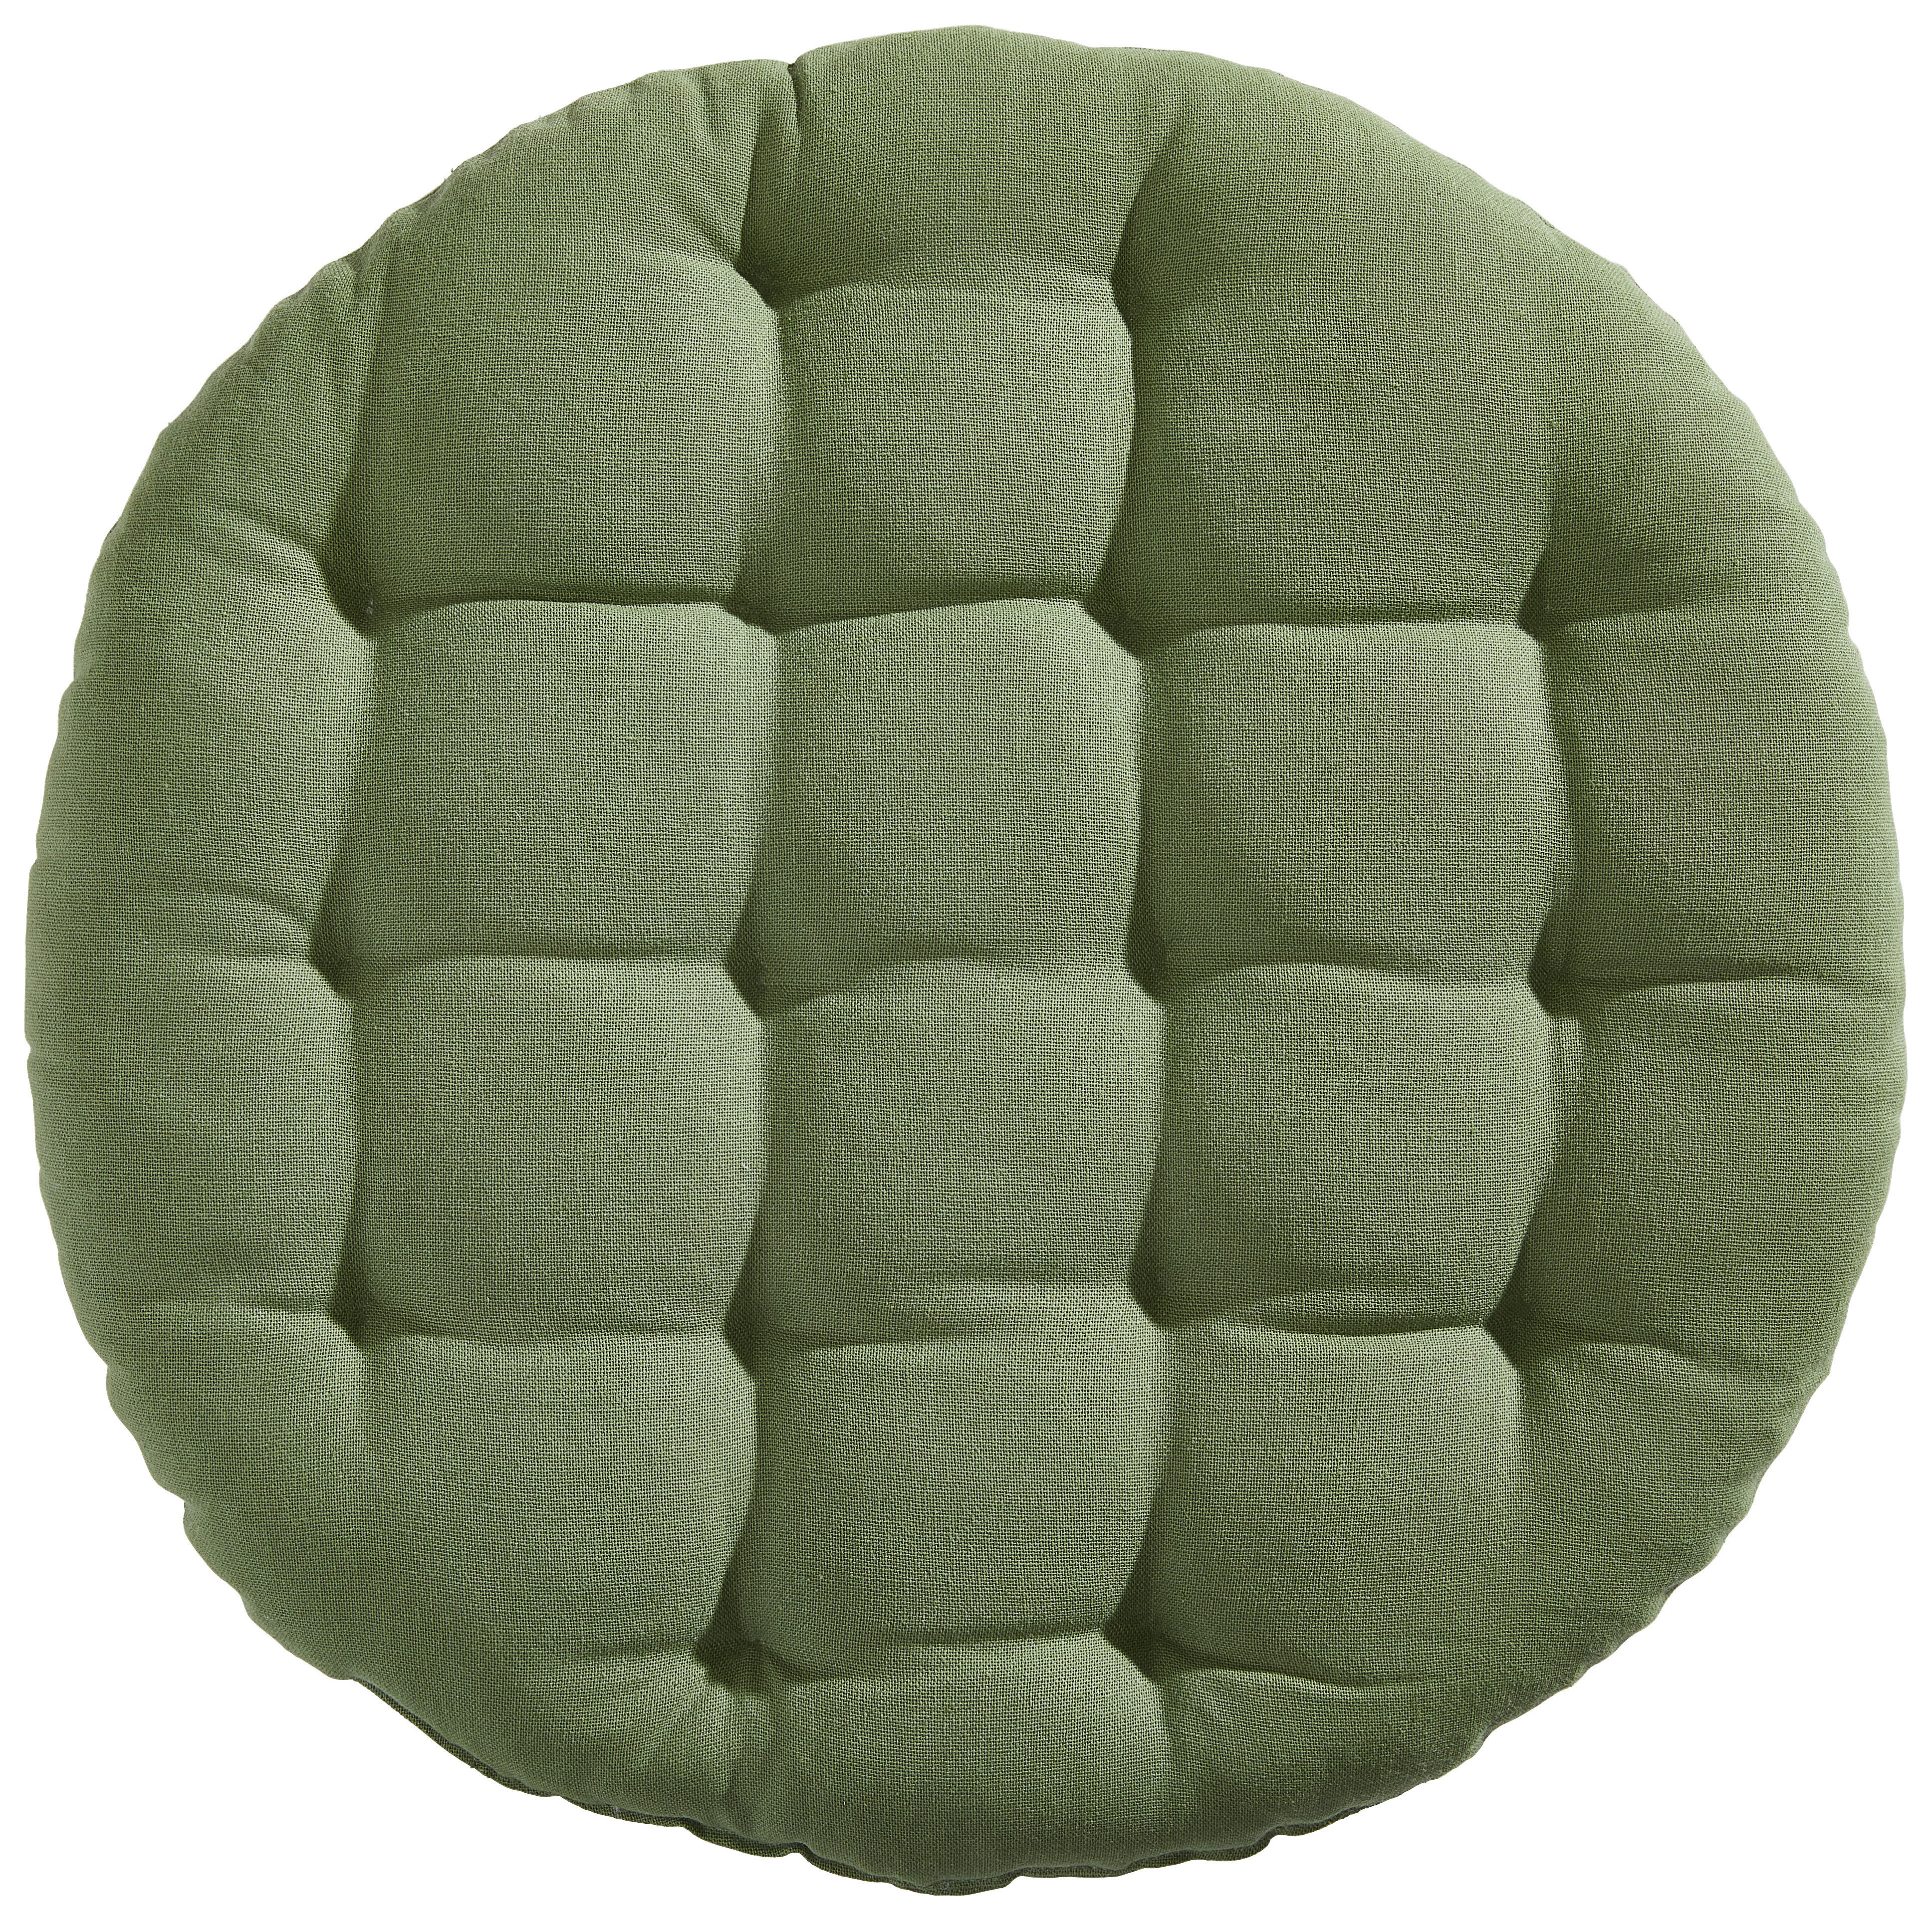 JASTUK ZA SJEDENJE  40 cm   - svijetlo zelena, Design, tekstil (40cm) - Esposa